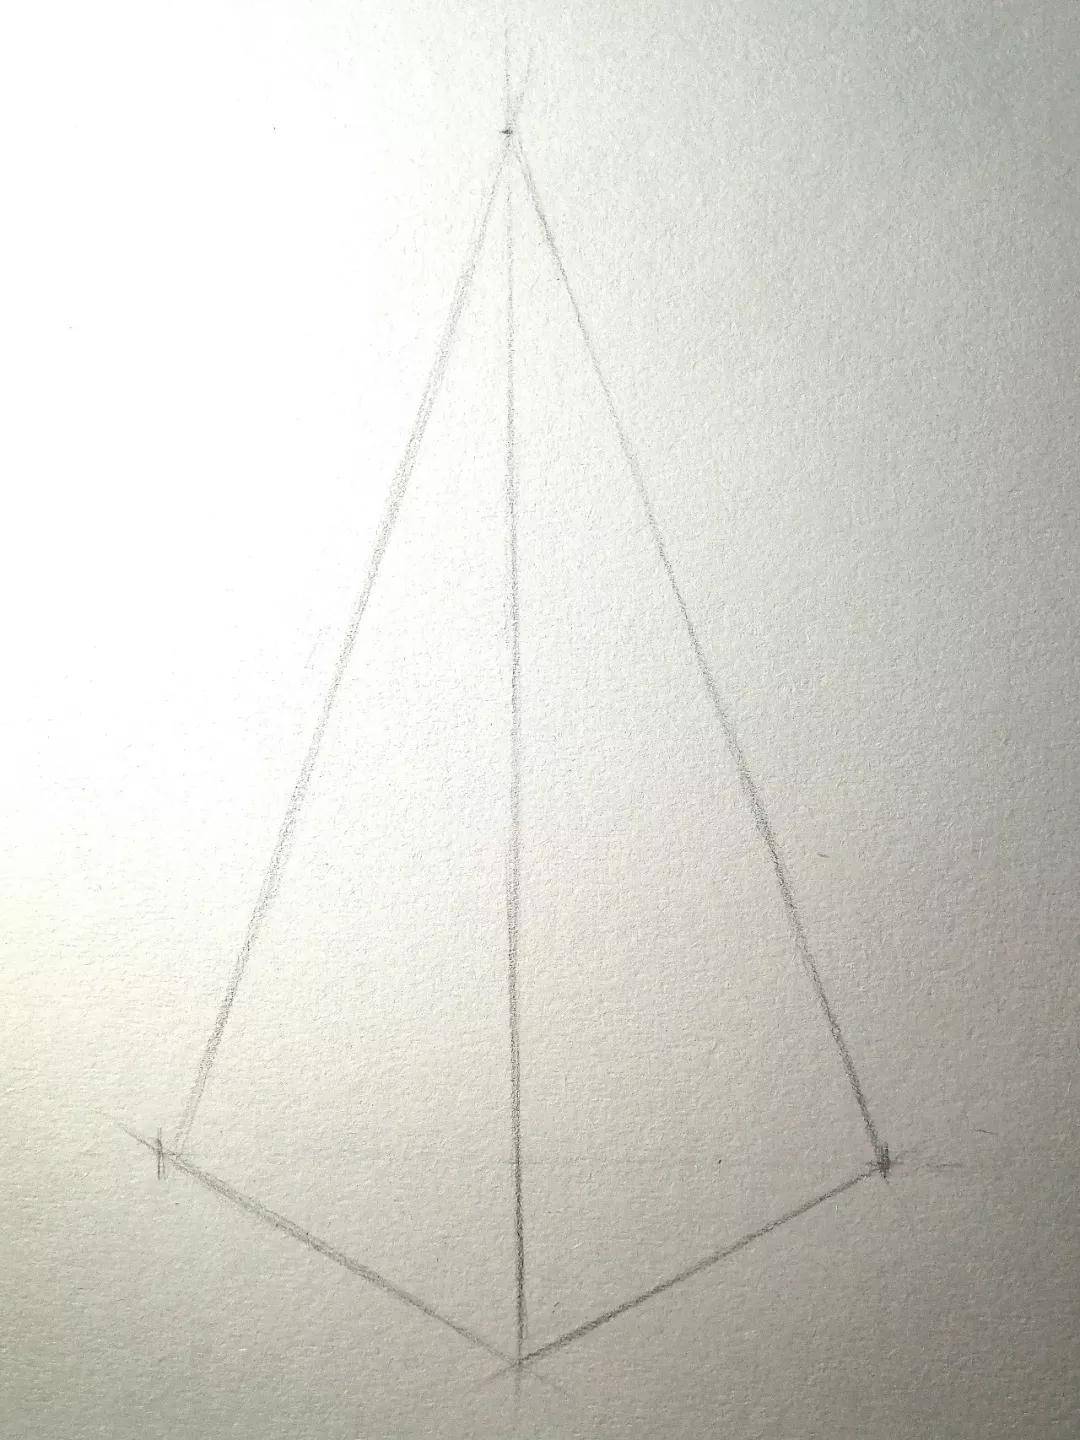 【推荐】素描几何体画法步骤|初级素描绘画几何体(附素描全套视频教程